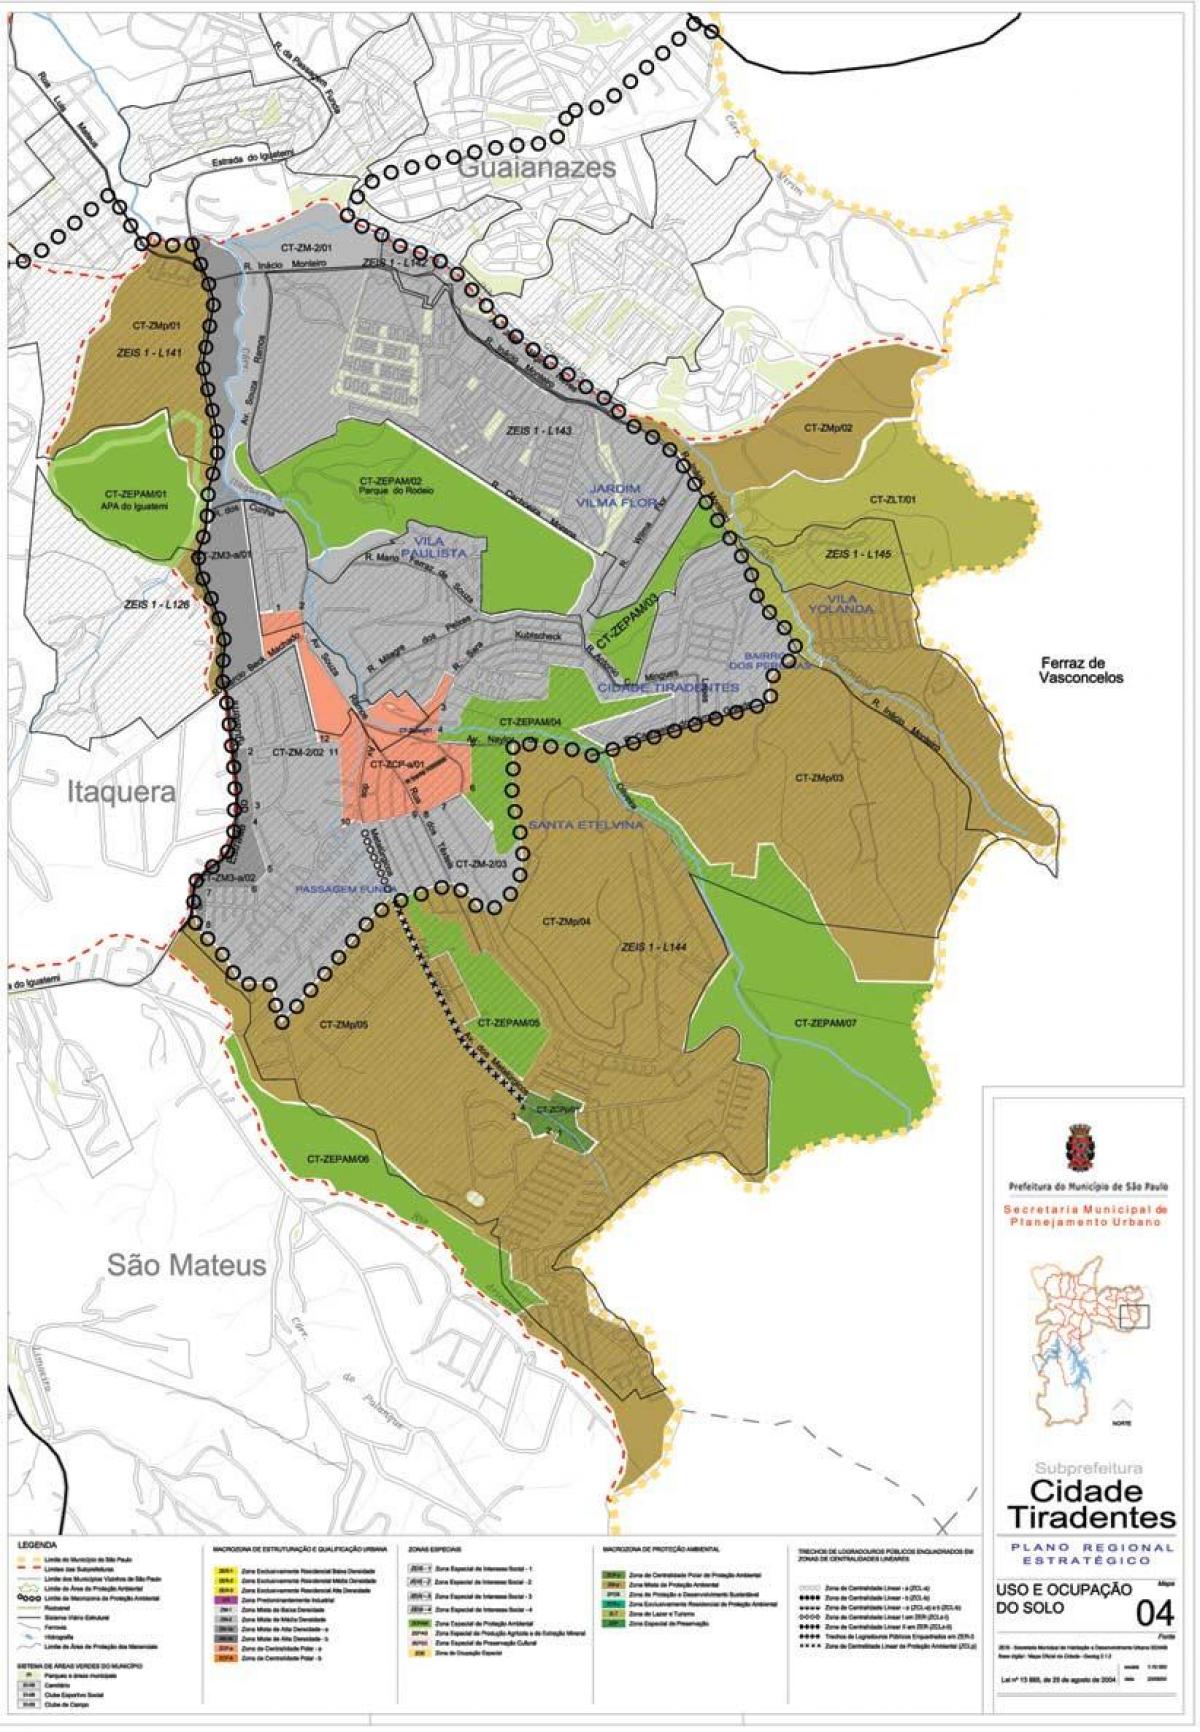 Mapa da Cidade Tiradentes São Paulo - Ocupación do solo